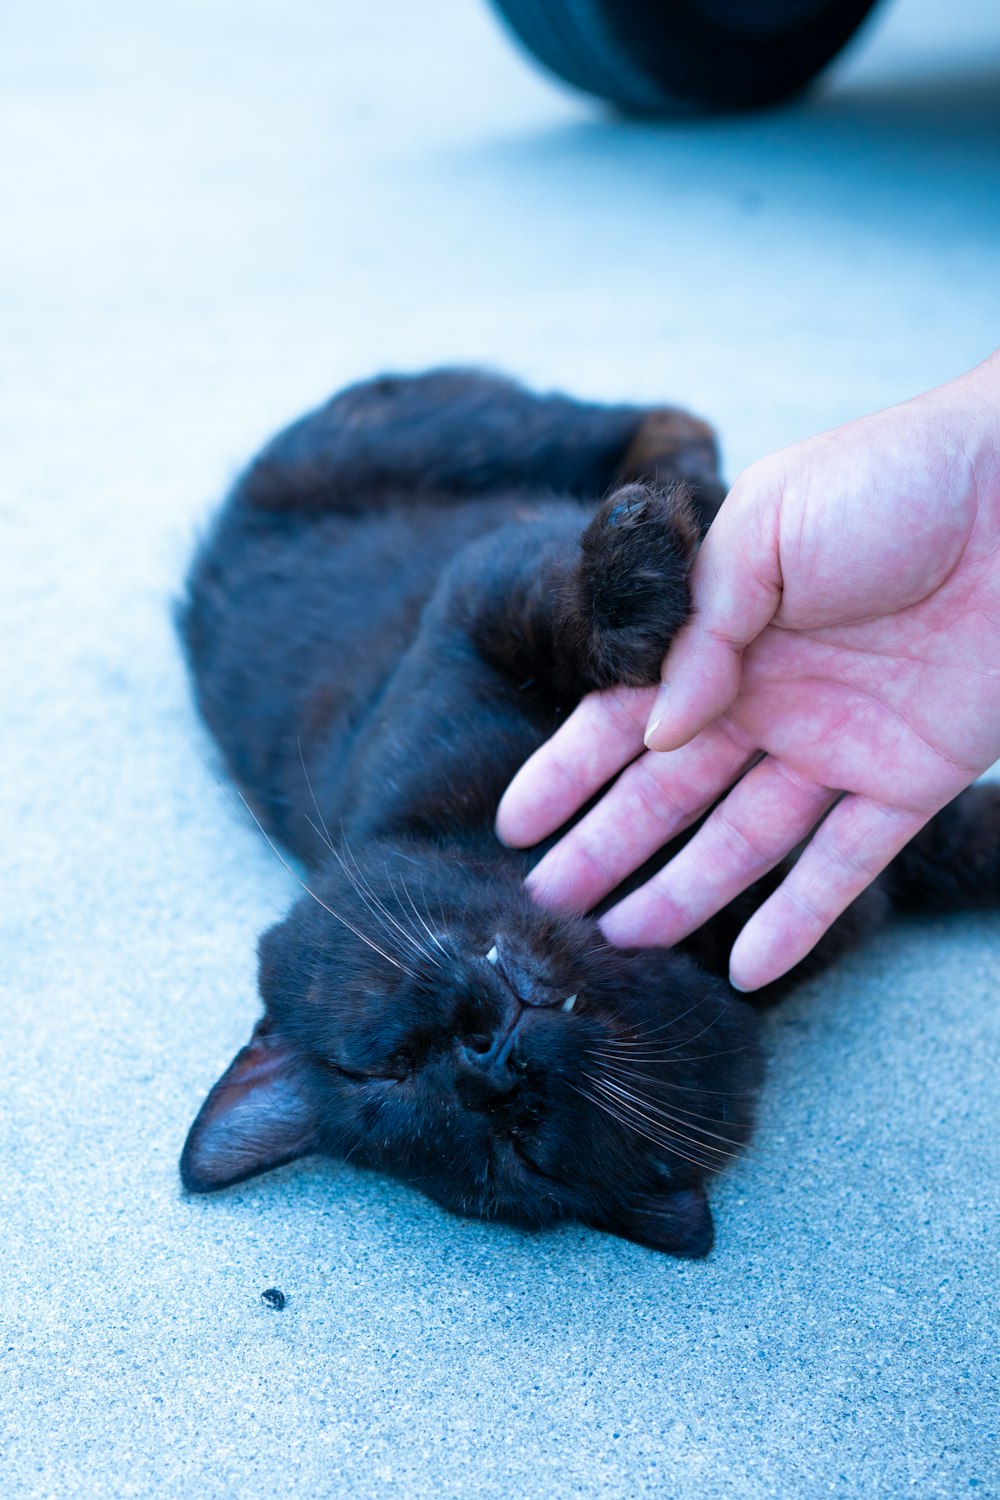 Una persona acariciando a un gato negro en el suelo